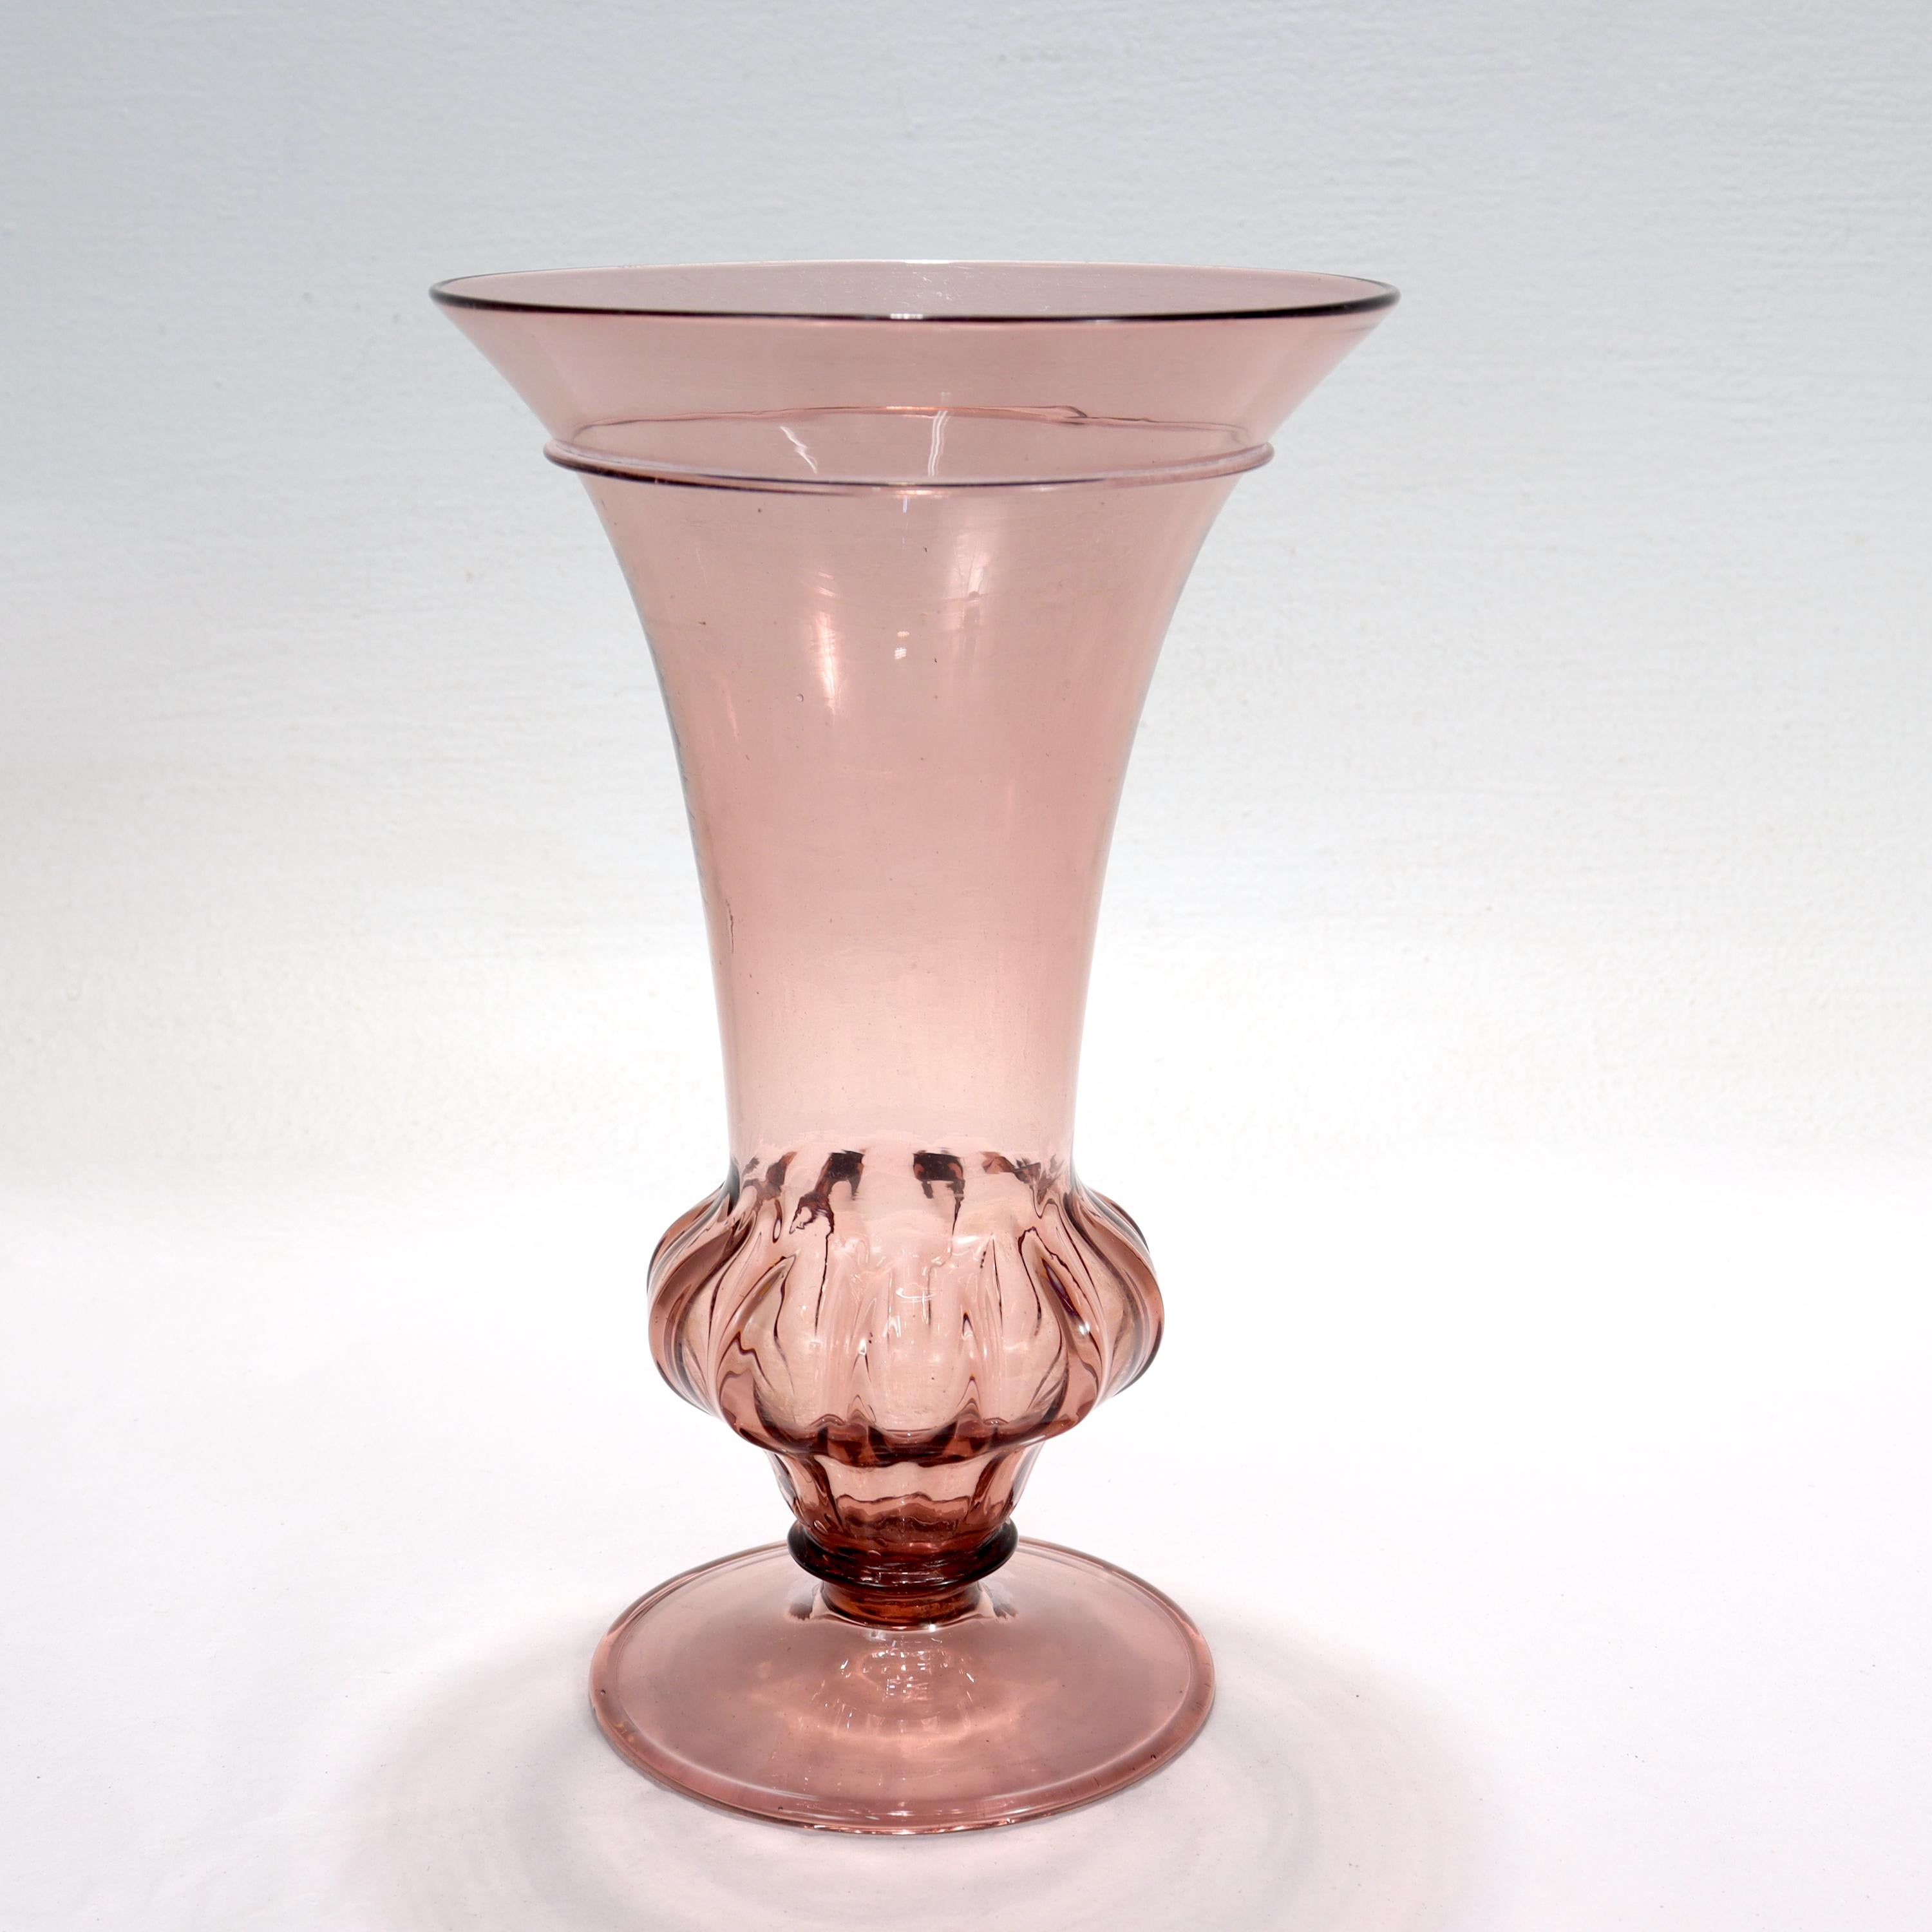 Vase en verre vénitien ou de Murano de couleur pourpre.

Le sommet en forme de trompette est surmonté à la base d'un bouton cannelé et supprimé, et repose sur un pied en forme de disque. 

Marque de pontil grossière sur la face